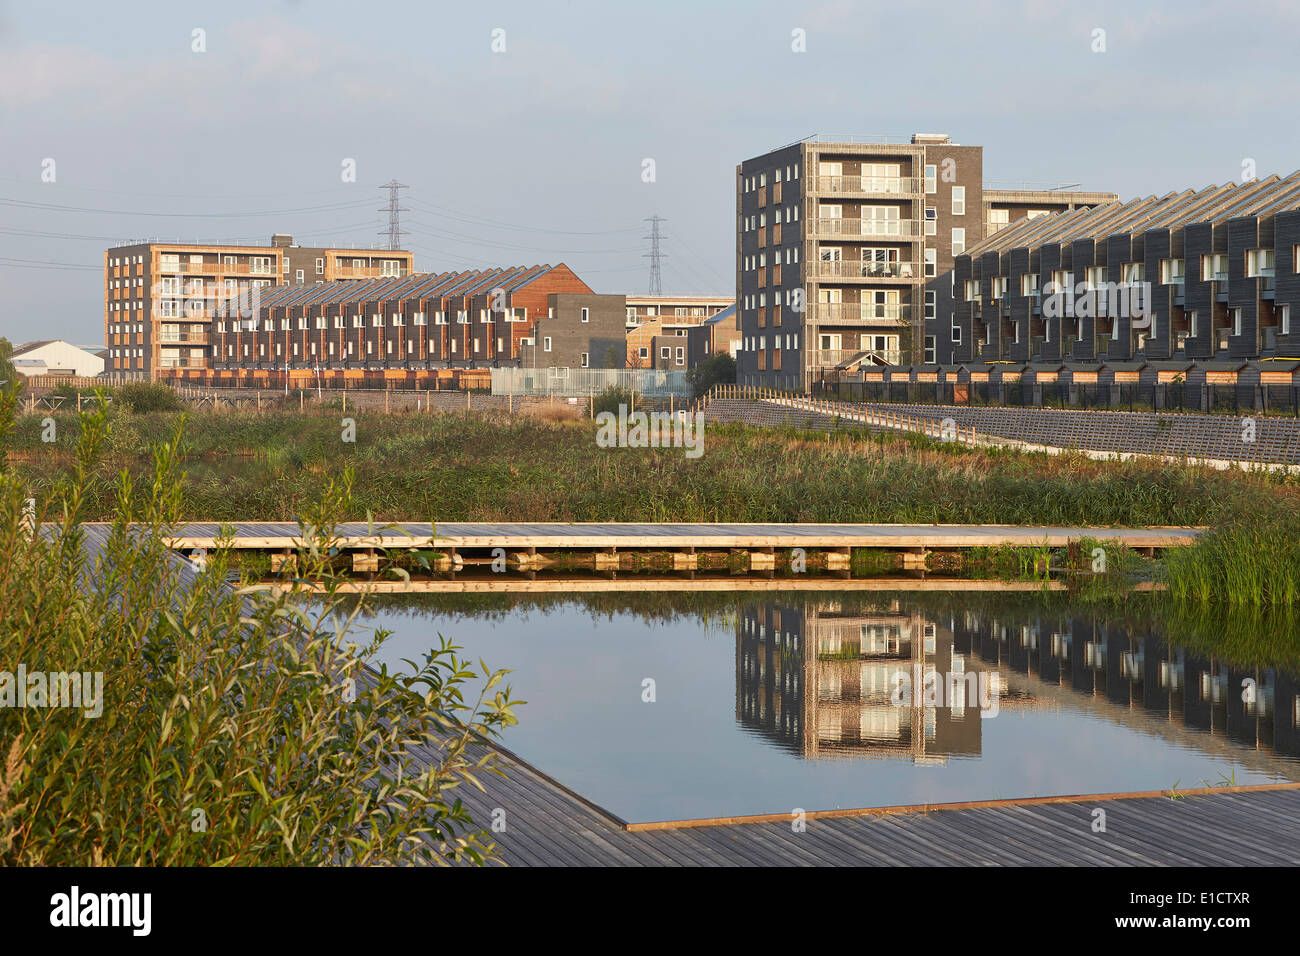 Bellen am Flussufer Wohnsiedlung, bellen, Vereinigtes Königreich. Architekt: Sheppard Robson, 2014. Angelegten Bach Teich-Gebiet Stockfoto